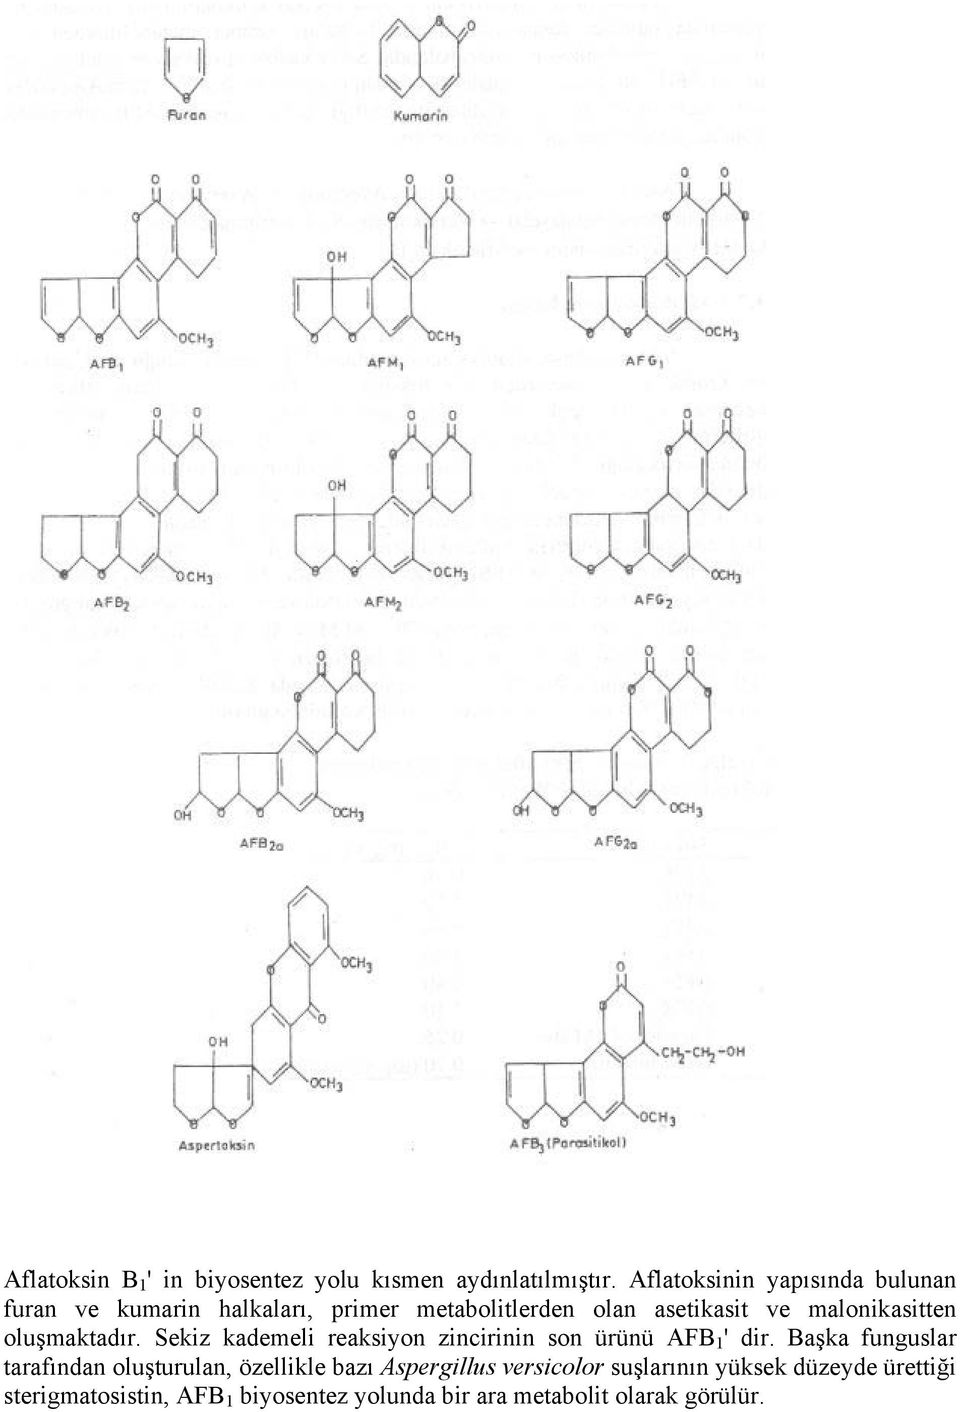 malonikasitten oluşmaktadır. Sekiz kademeli reaksiyon zincirinin son ürünü AFB 1 ' dir.